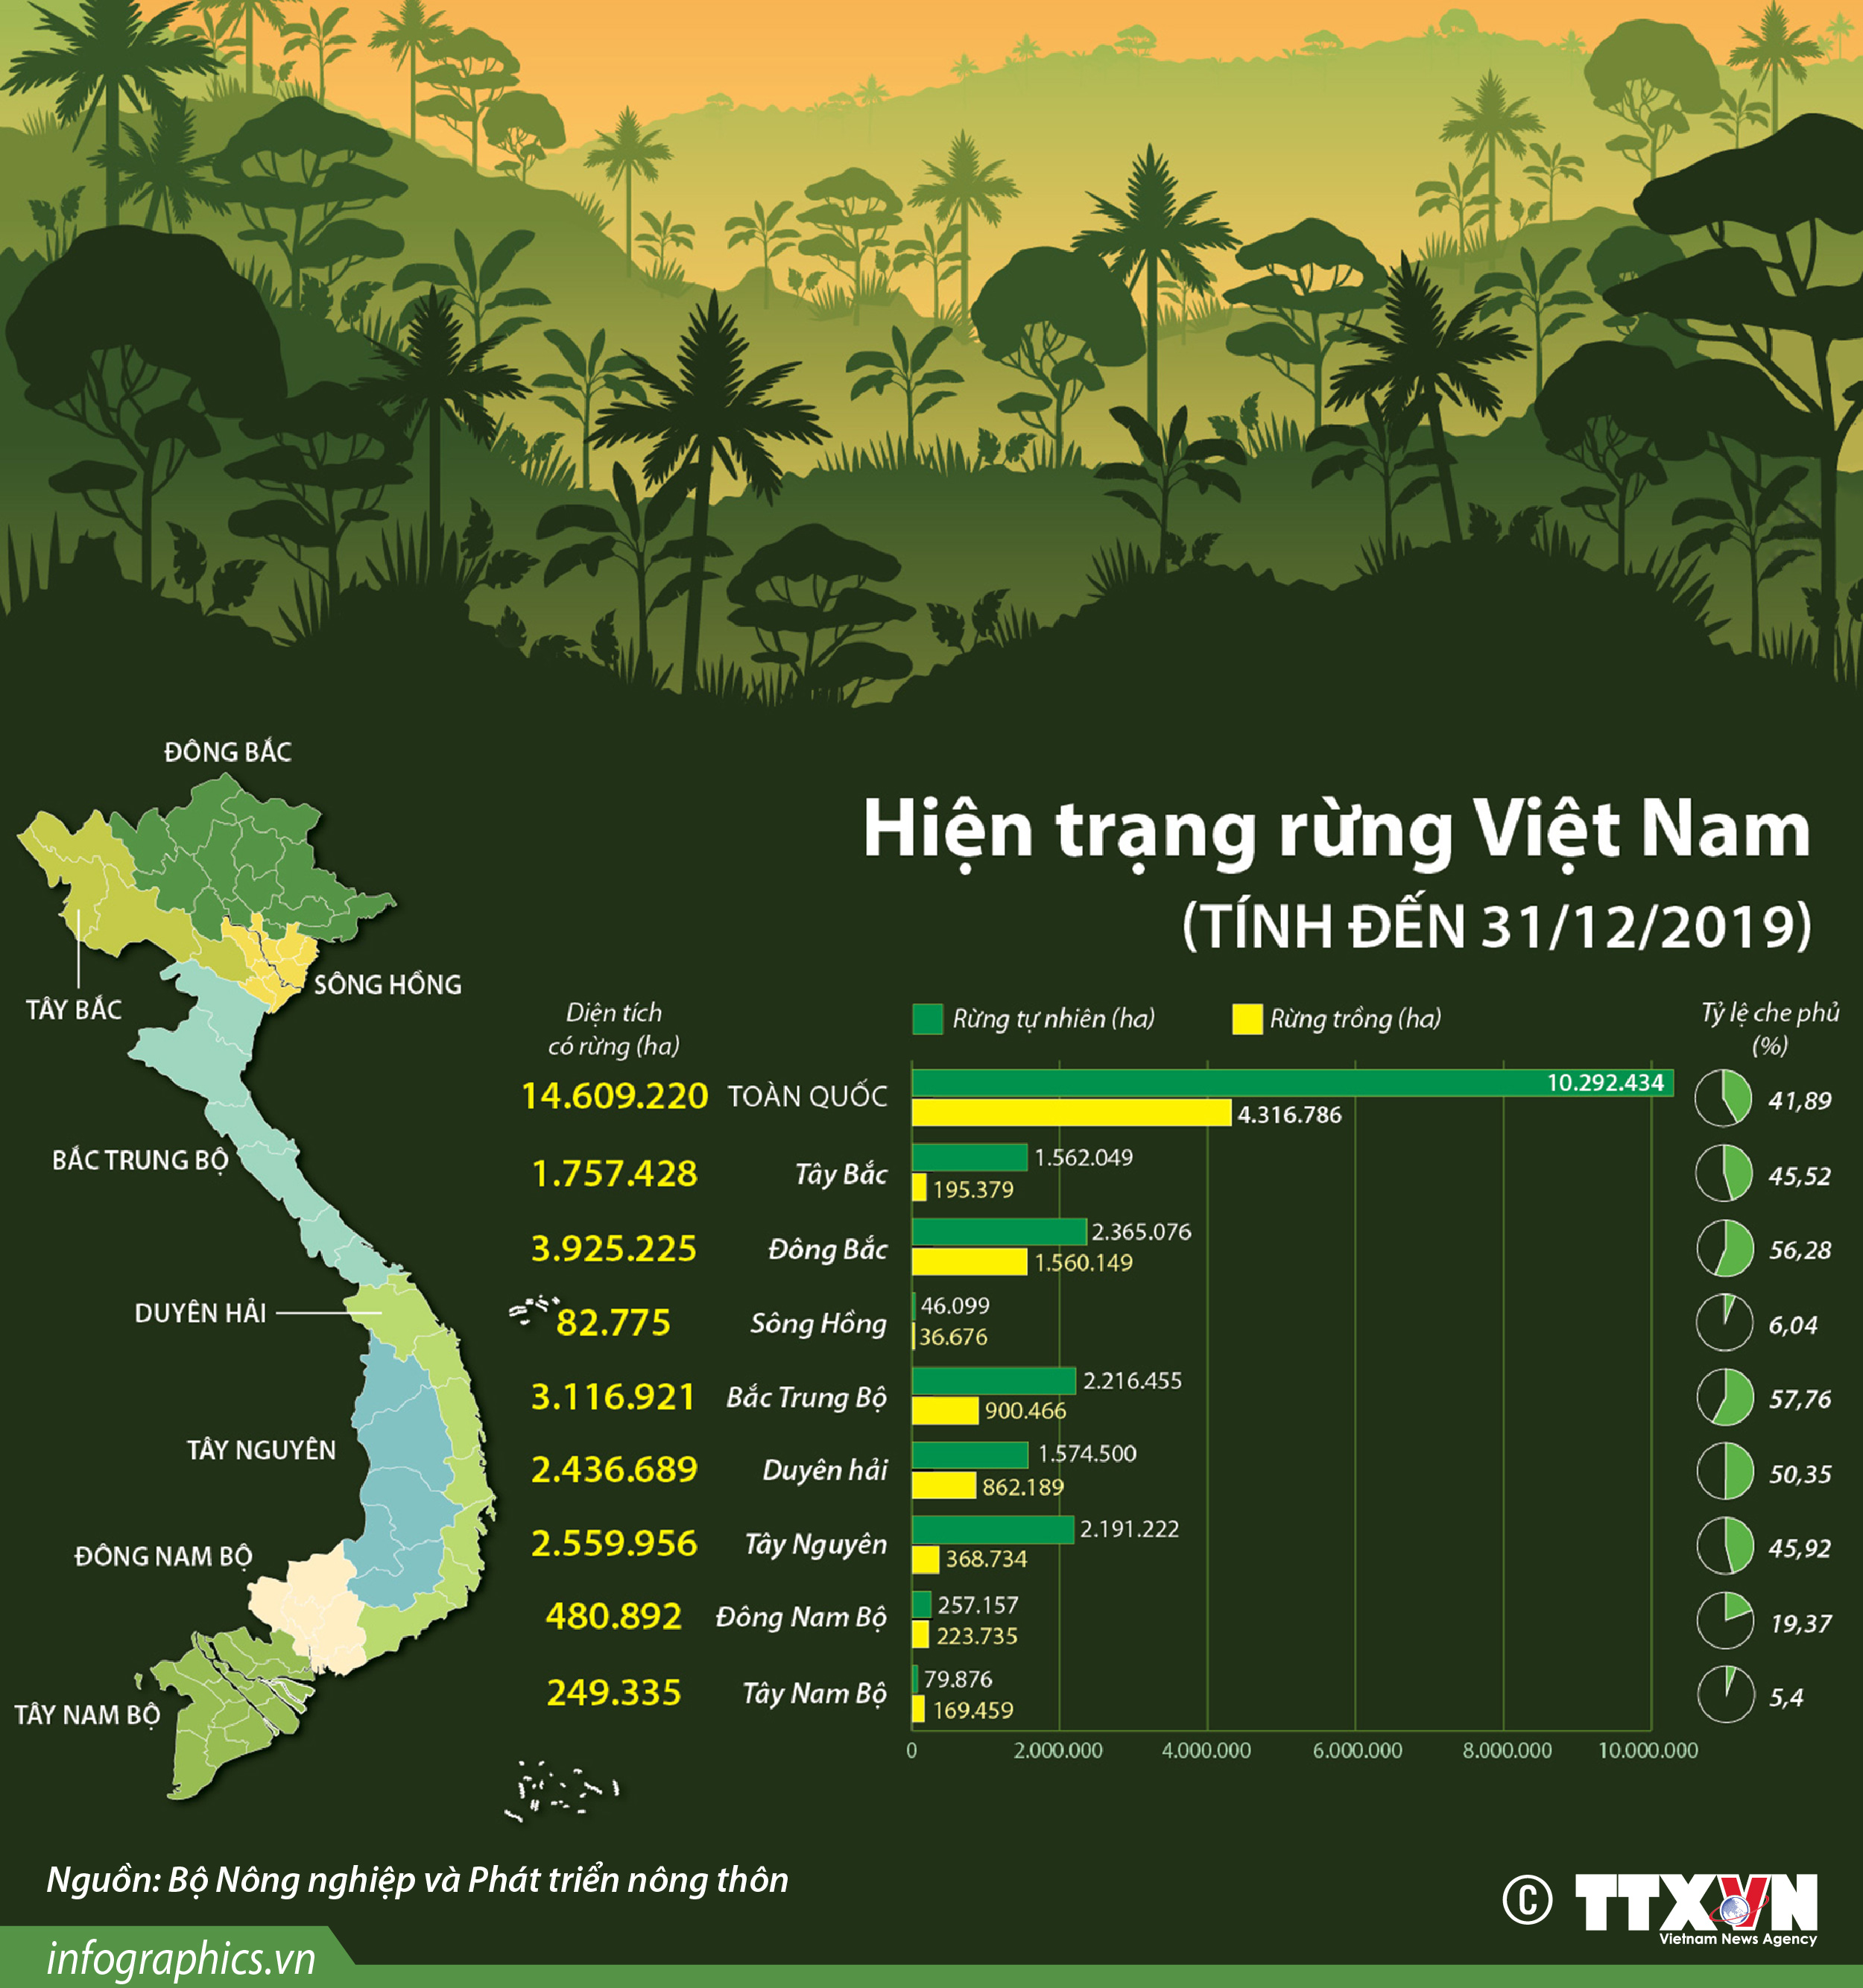 Diện tích Việt Nam 2019: Tổng Quan và Phân Tích Đa Chiều